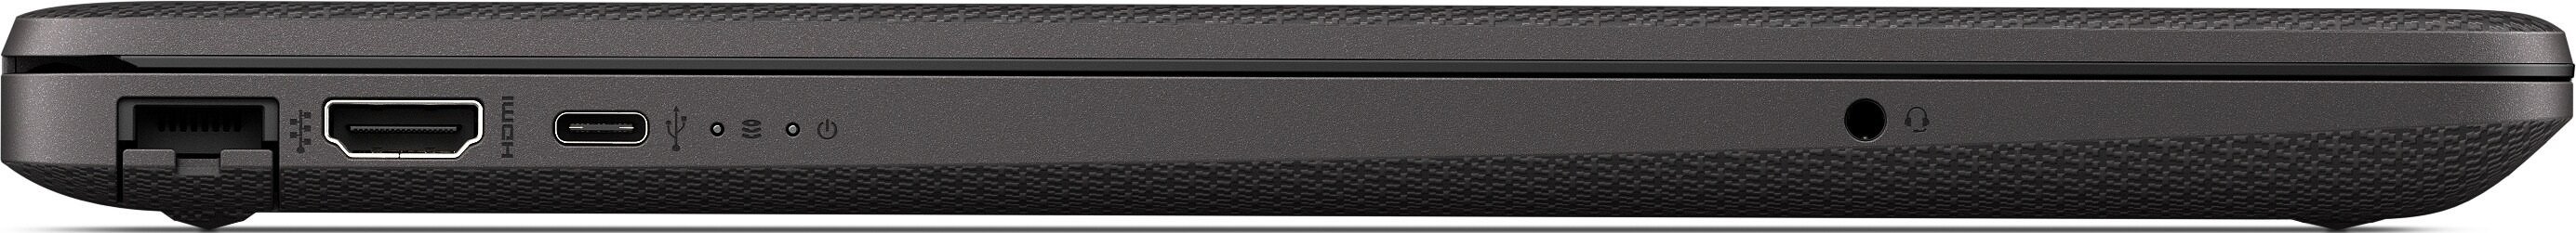 Ноутбук HP ProBook 450 G8 Core i5-1135G7 2.4GHz 15.6" FHD (1920x1080) AG,8GB DDR4(1),512Gb SSD,45Wh LL,FPR,Backlit,2kg,1y,Silver,Dos-39318